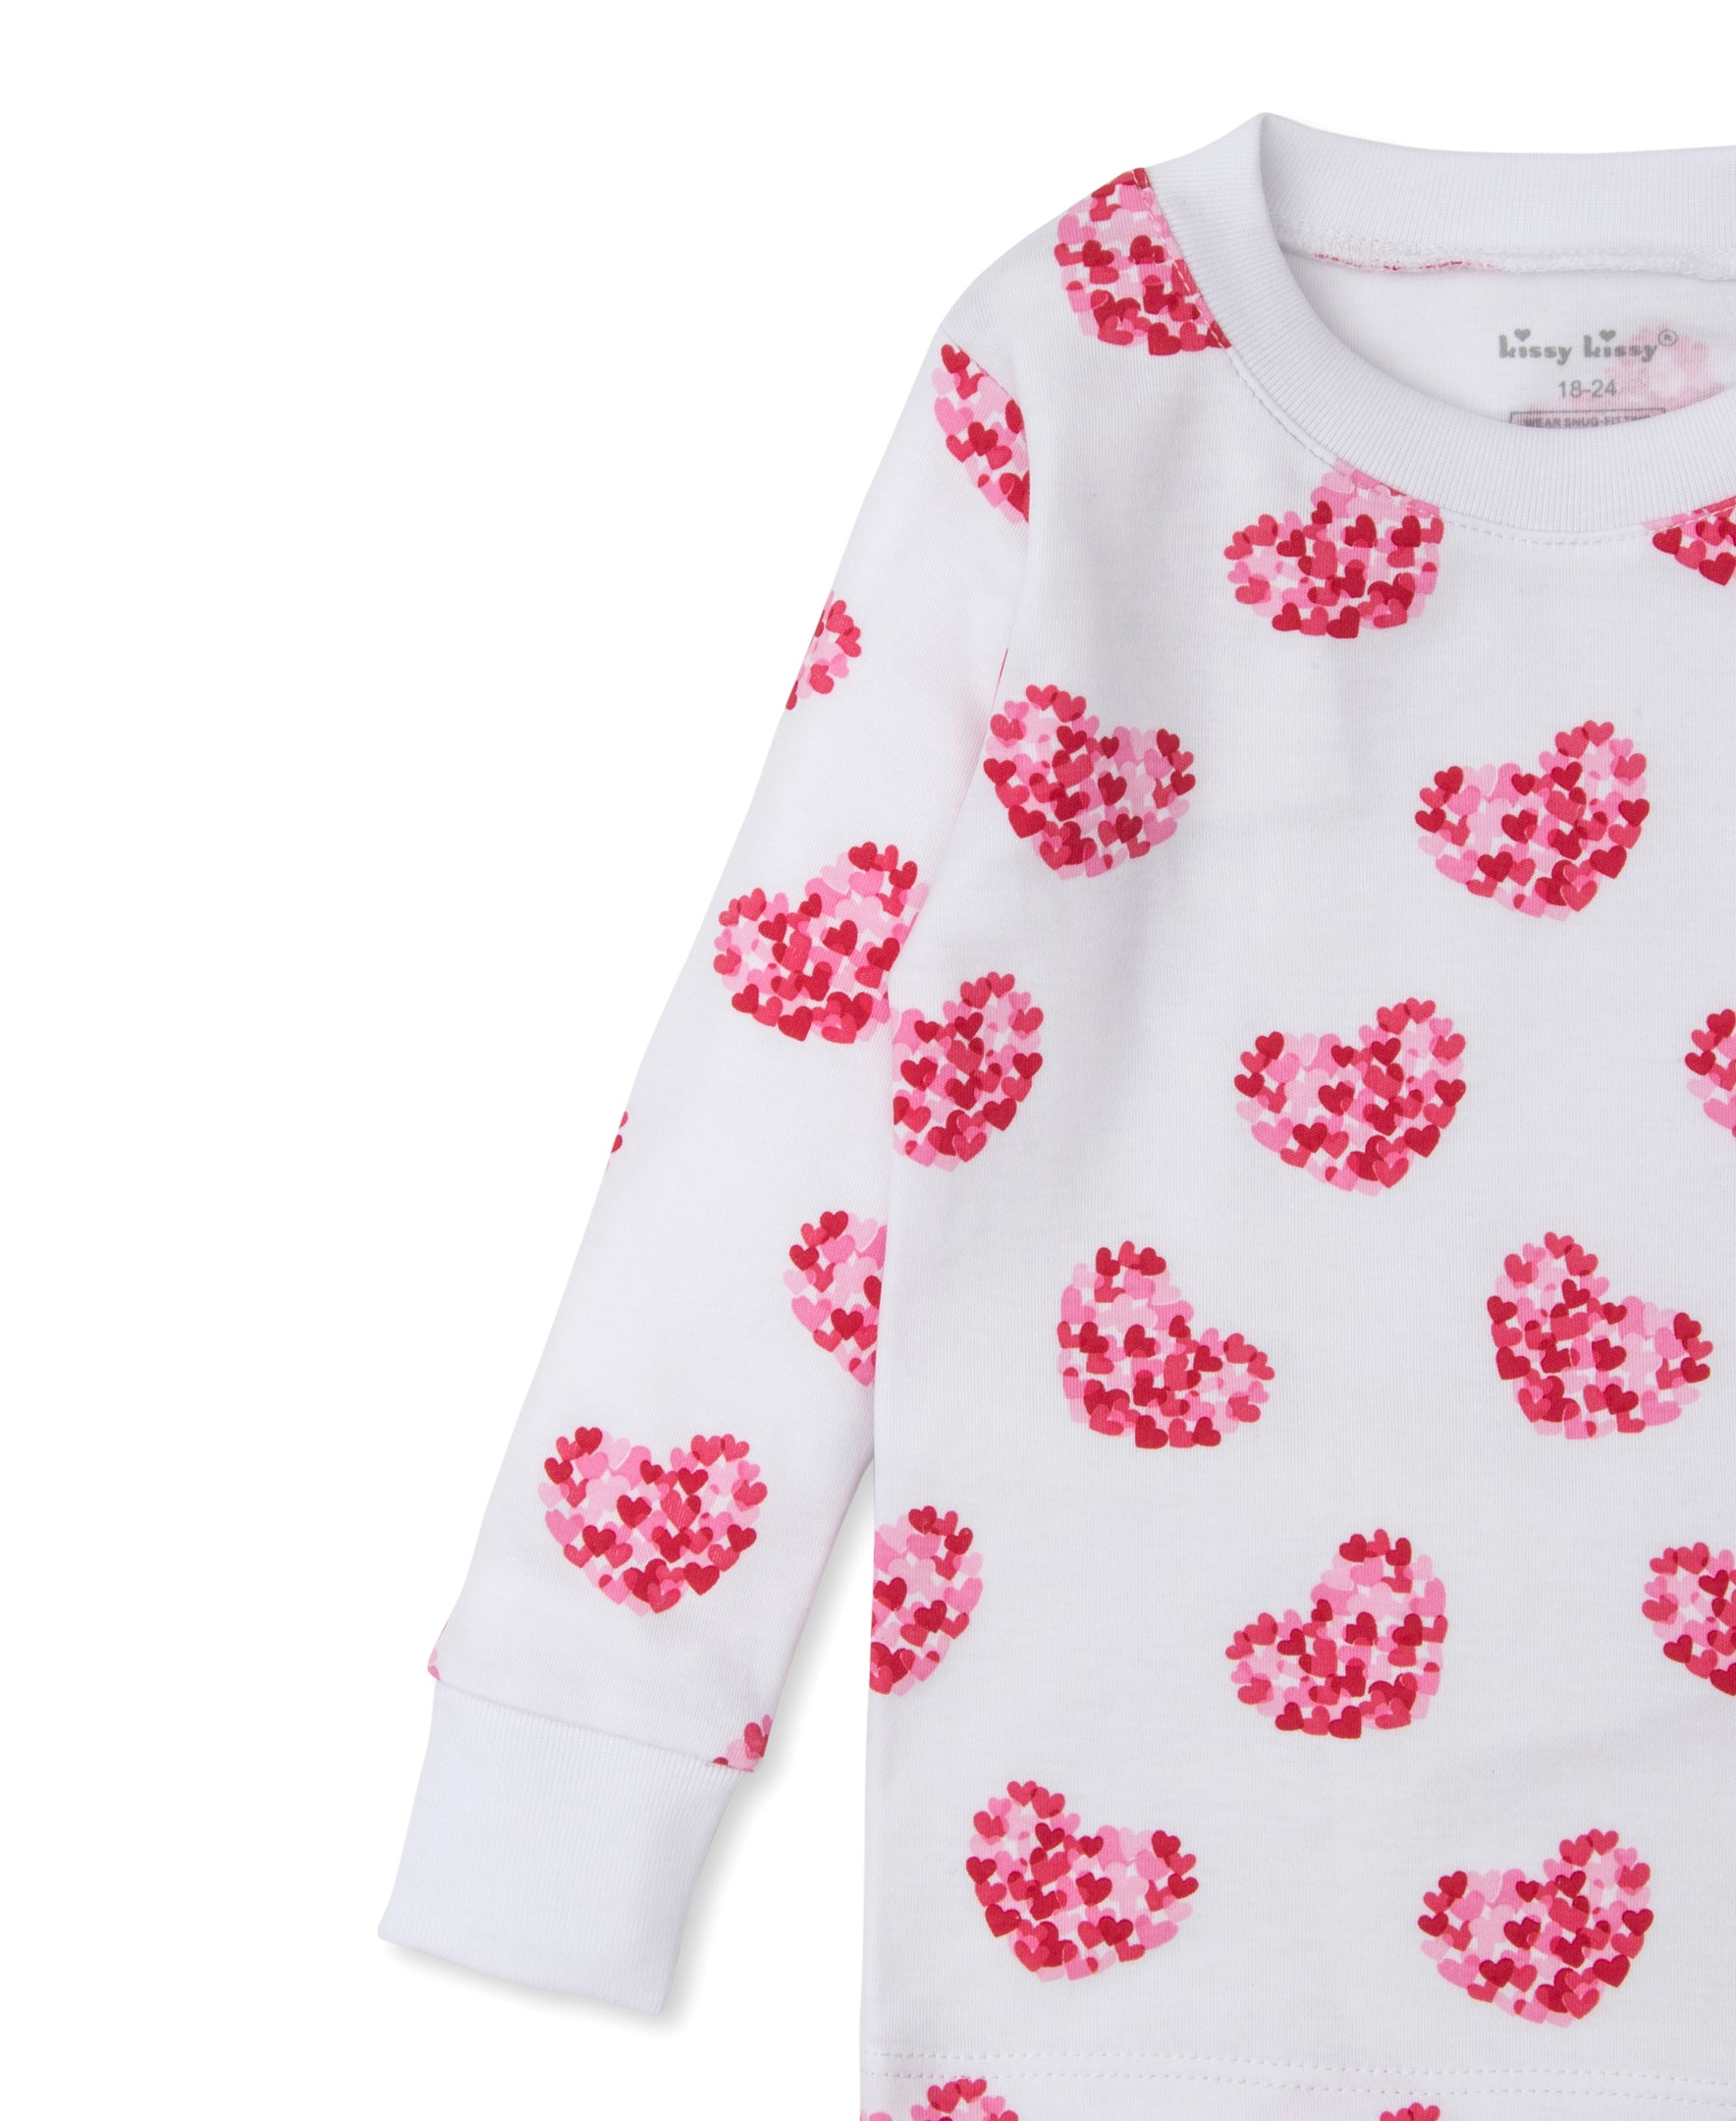 Heart of Hearts Toddler Pajama Set - Kissy Kissy